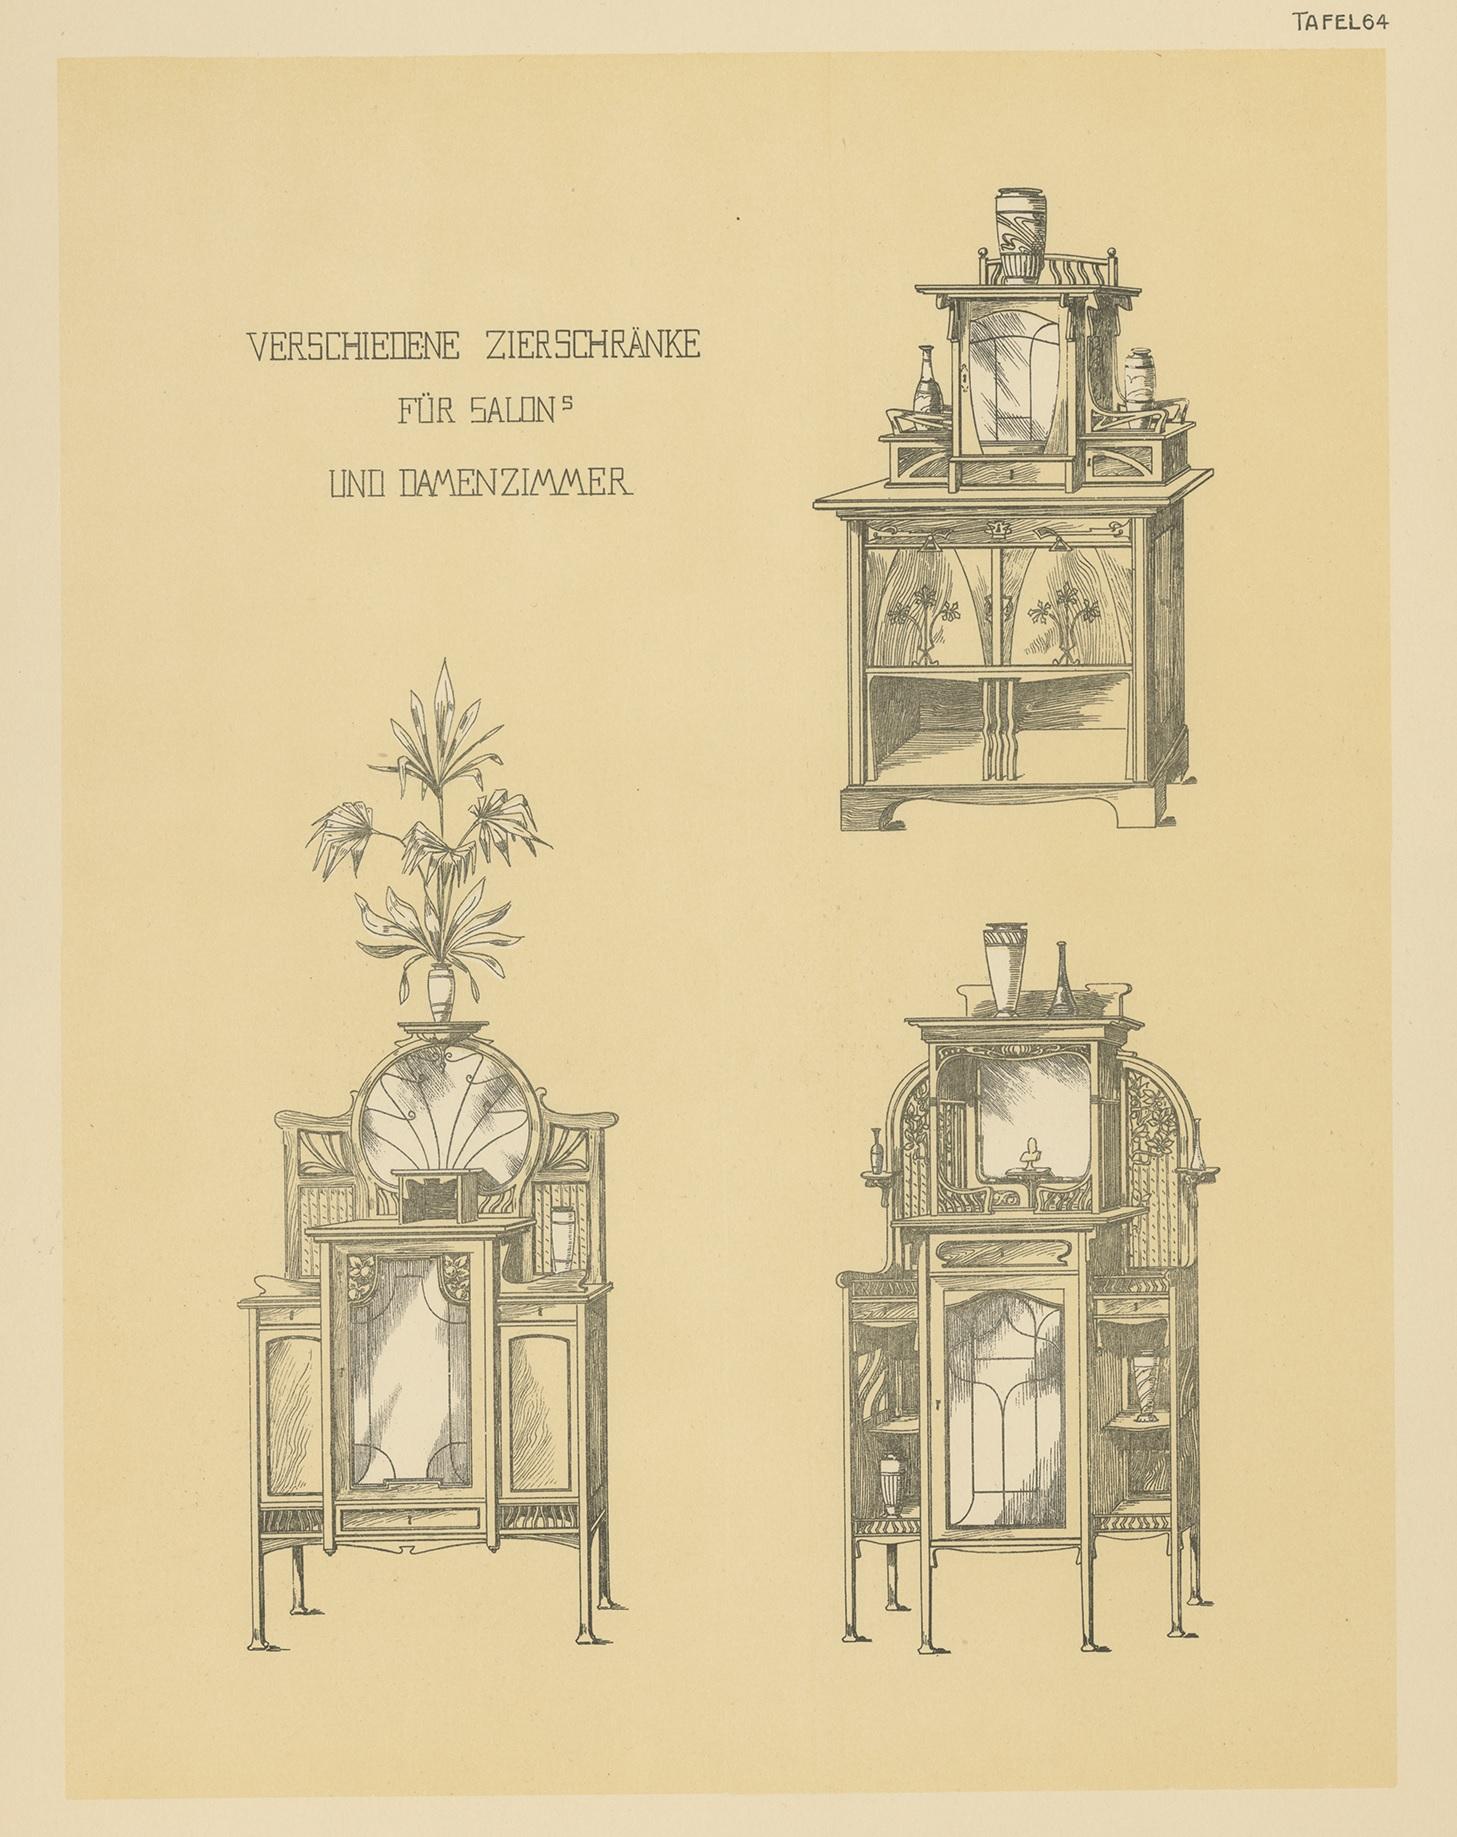 Antique print titled 'Verschiedene Zierschranke fur Salons und Damenzimmer'. Lithograph of decorative cabinets. This print originates from 'Det Moderna Hemmet' by Johannes Kramer. Published by Ferdinand Hey'l, circa 1910.